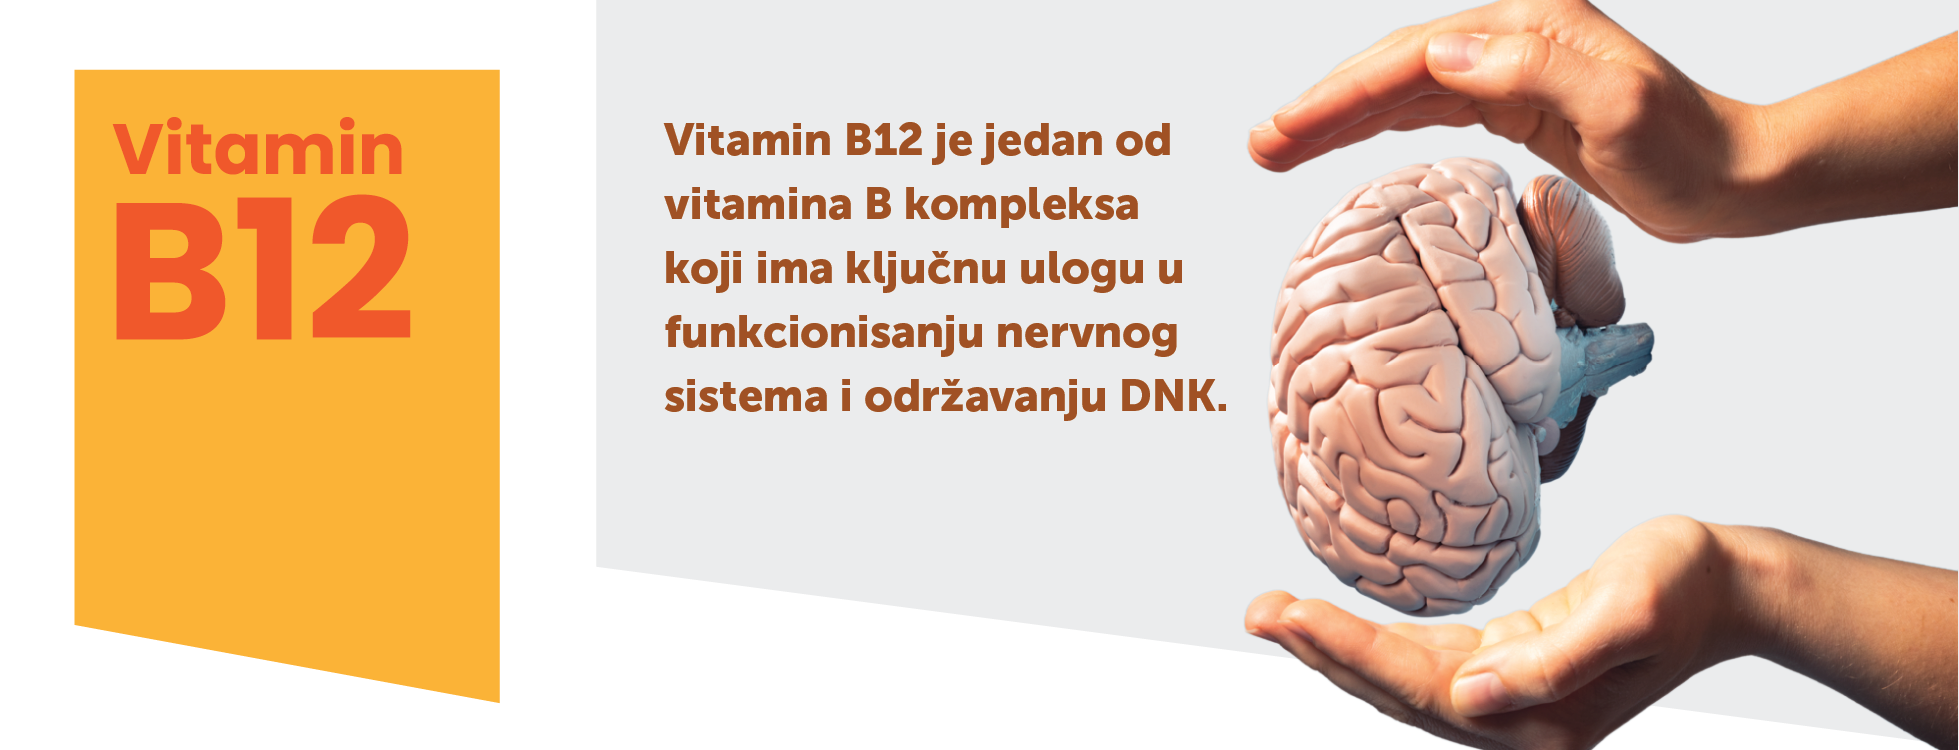 Vitamin B12 - zašto je važan i značajan?